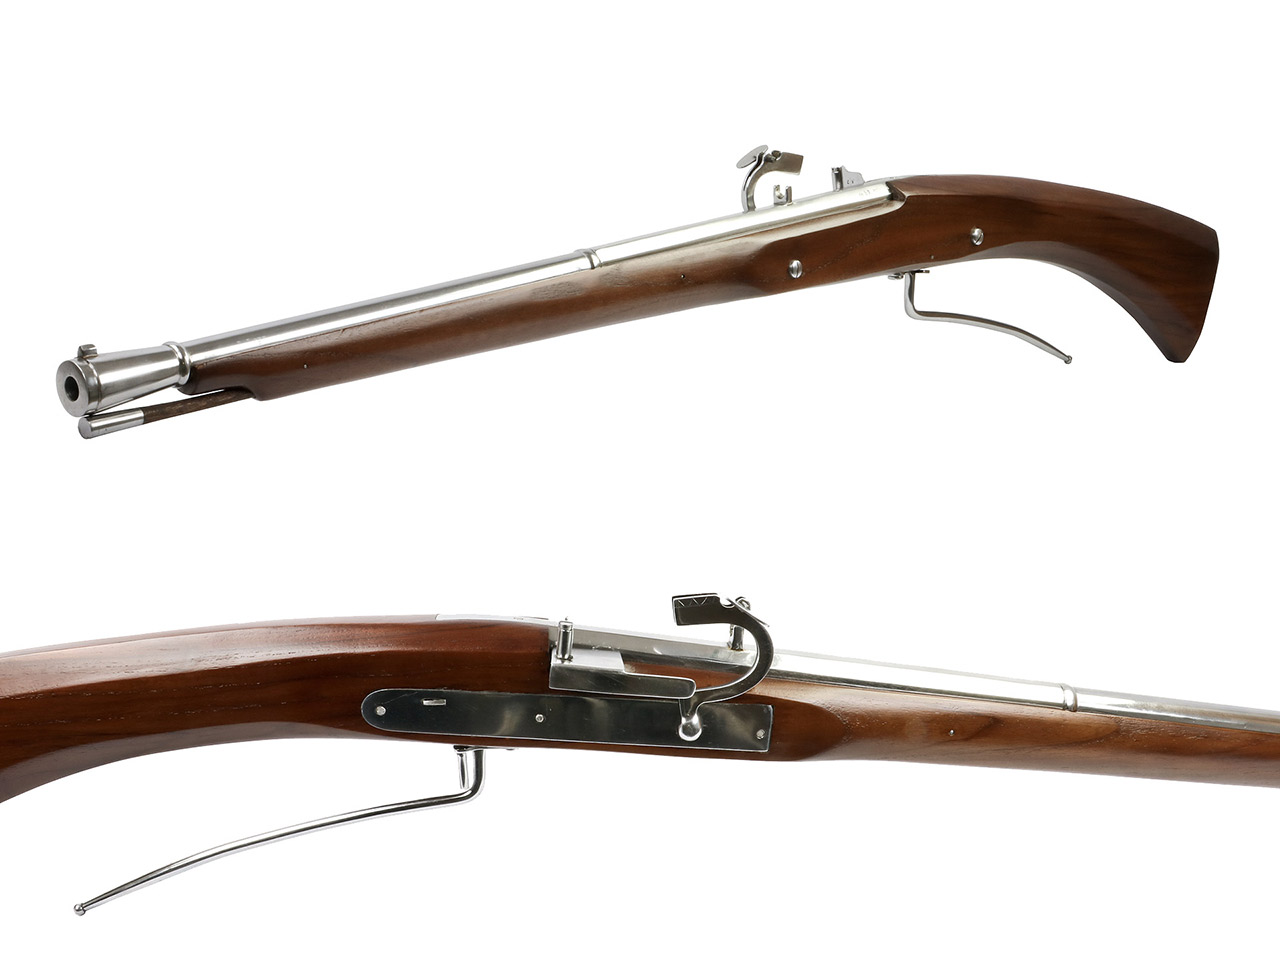 Vorderlader Luntenschlossgewehr Matchlock Rifle Arkebuse Kaliber .57 bzw. 14,5 mm (P18)